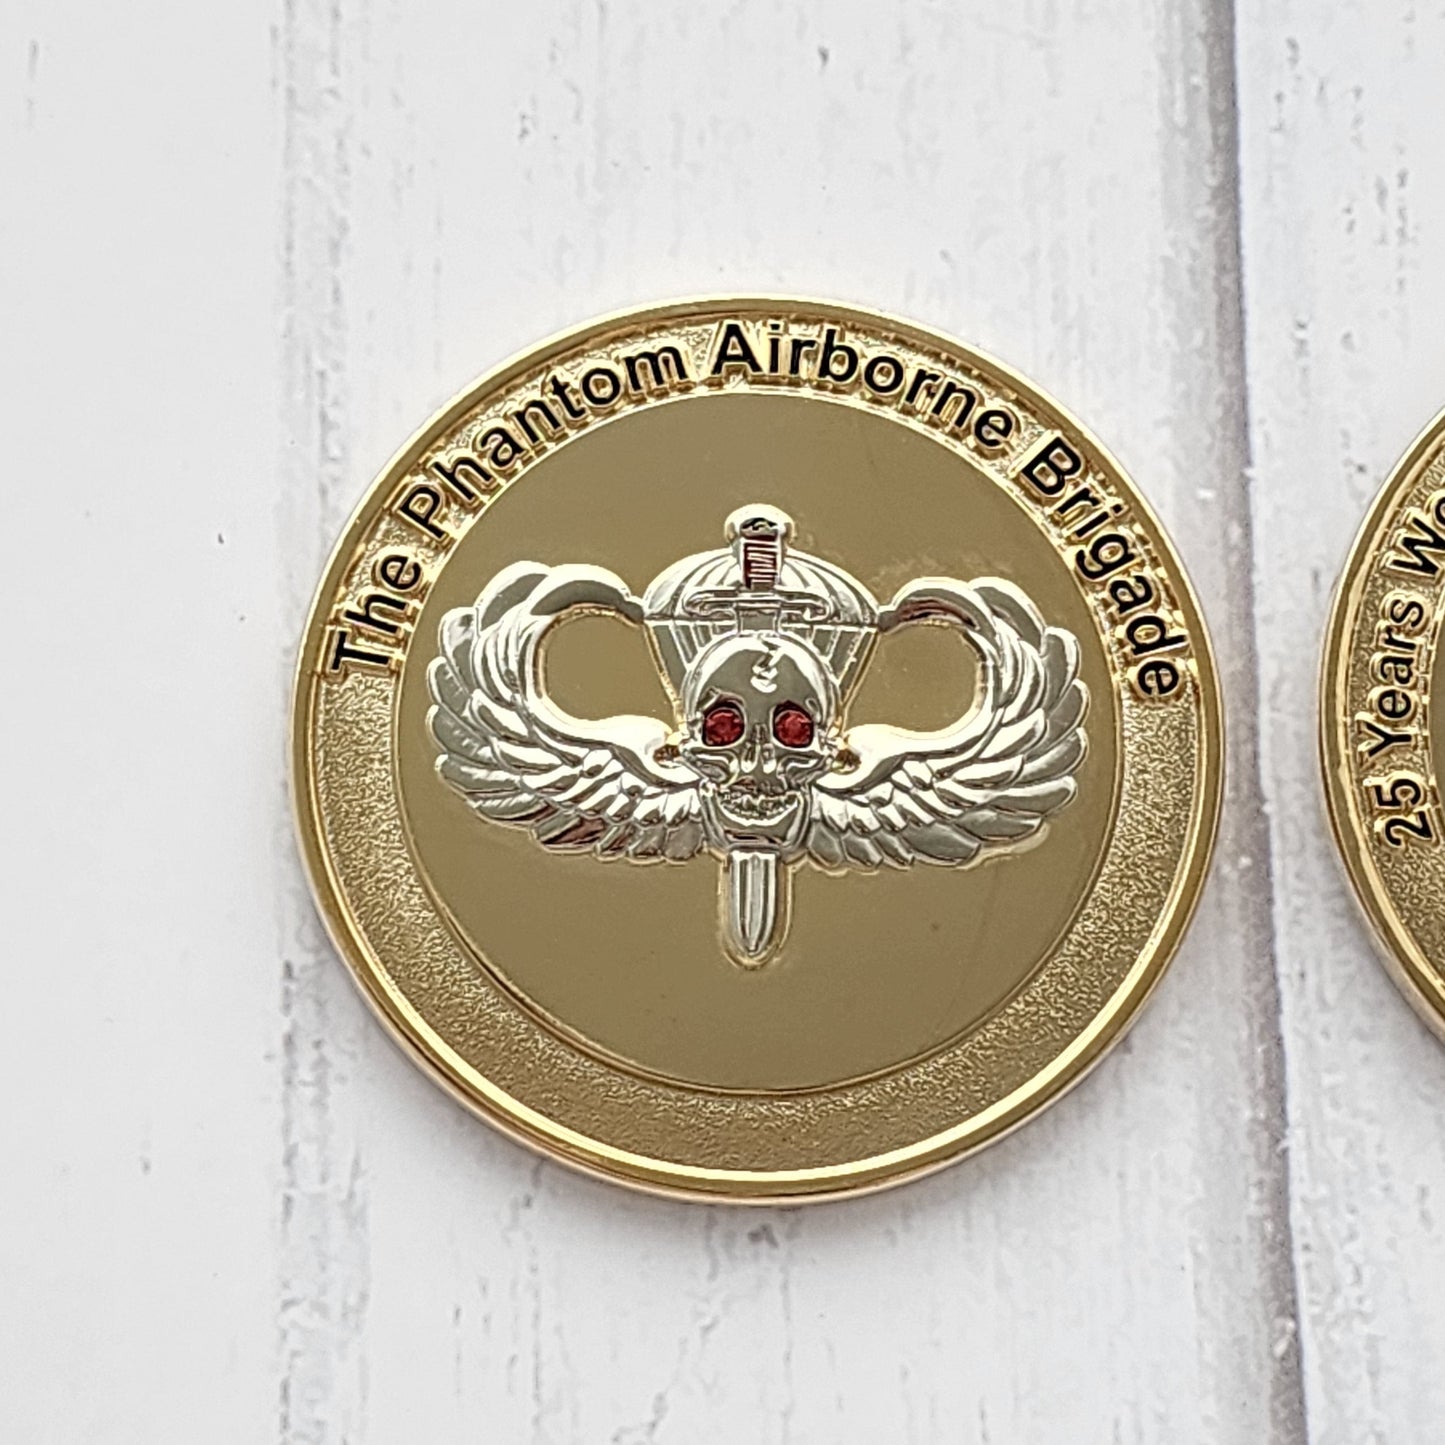 Phantom Airborne Brigade German Paratrooper Challange Coin